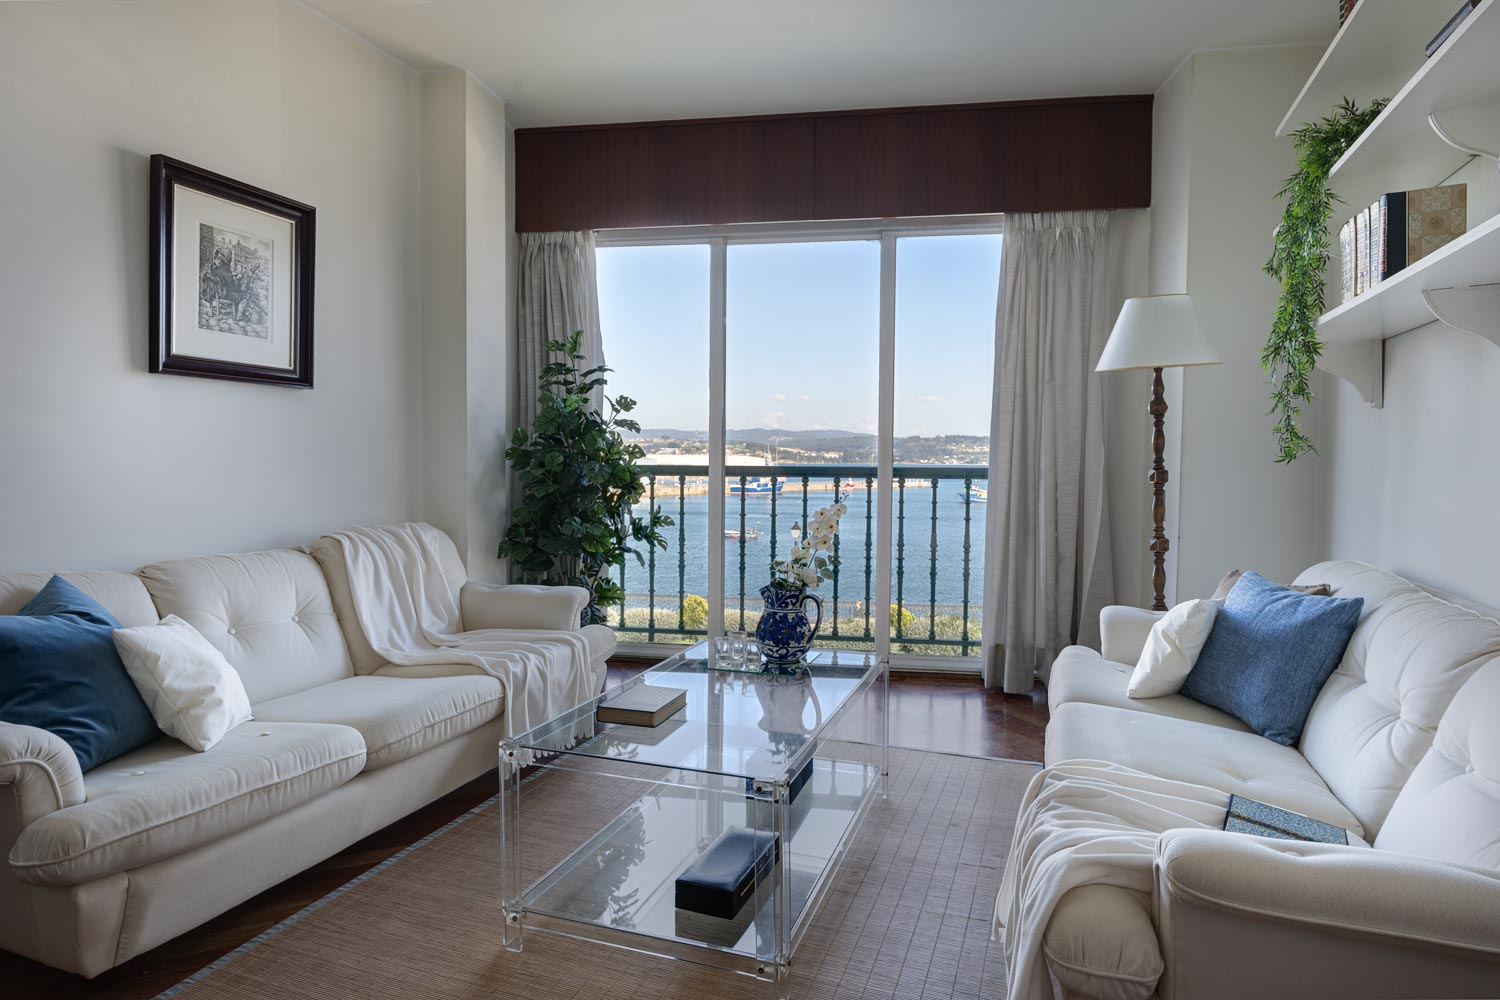 Conjunto de sofás blancos y mes de centro de metacrilato en salón con terraza y vistas al mar